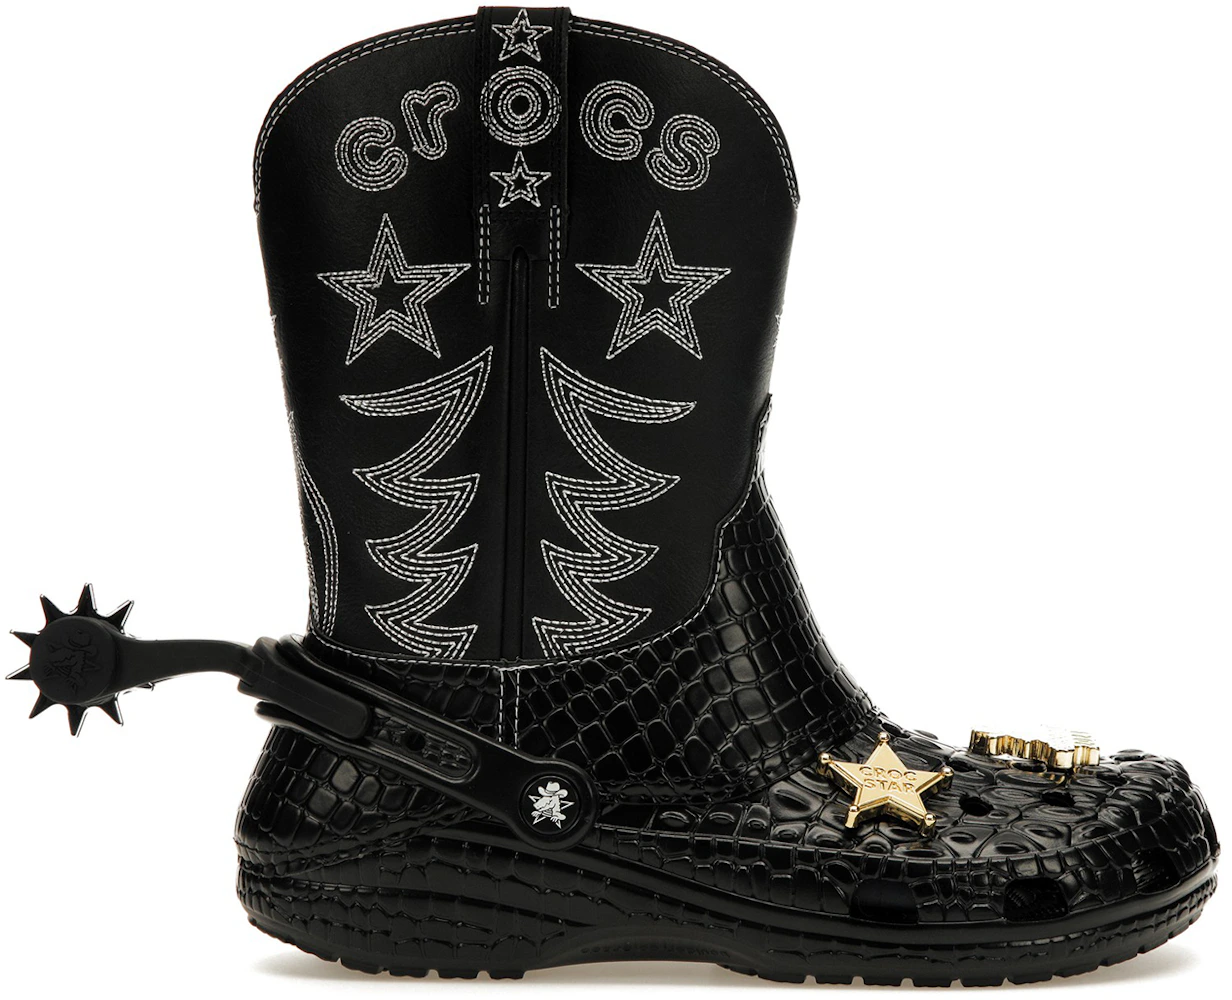 Crocs Classic Cowboy Boot Black Men's - 208695-001 - US